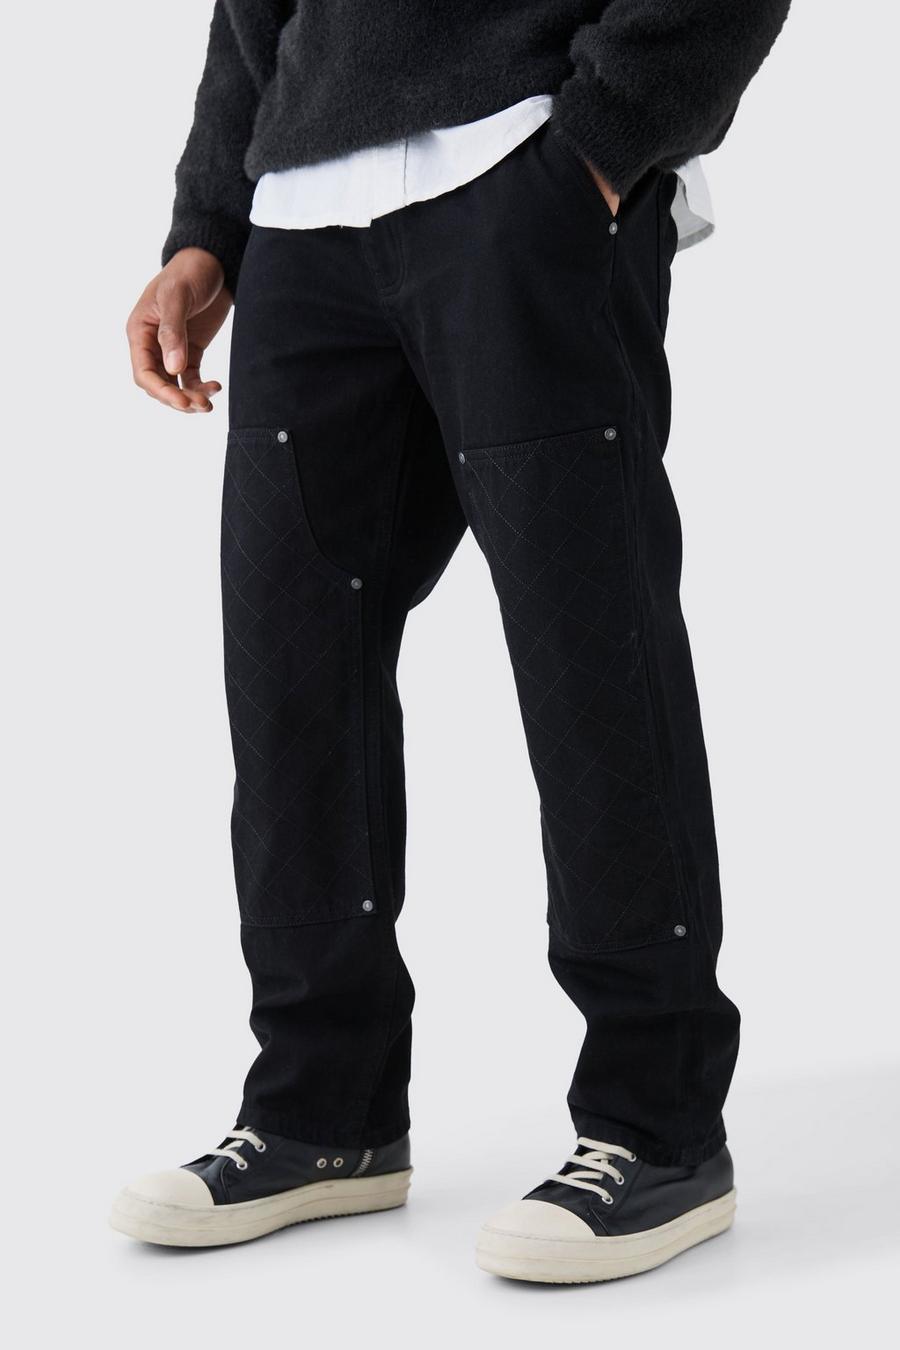 Lockere Jeans in Schwarz mit Naht-Detail, True black